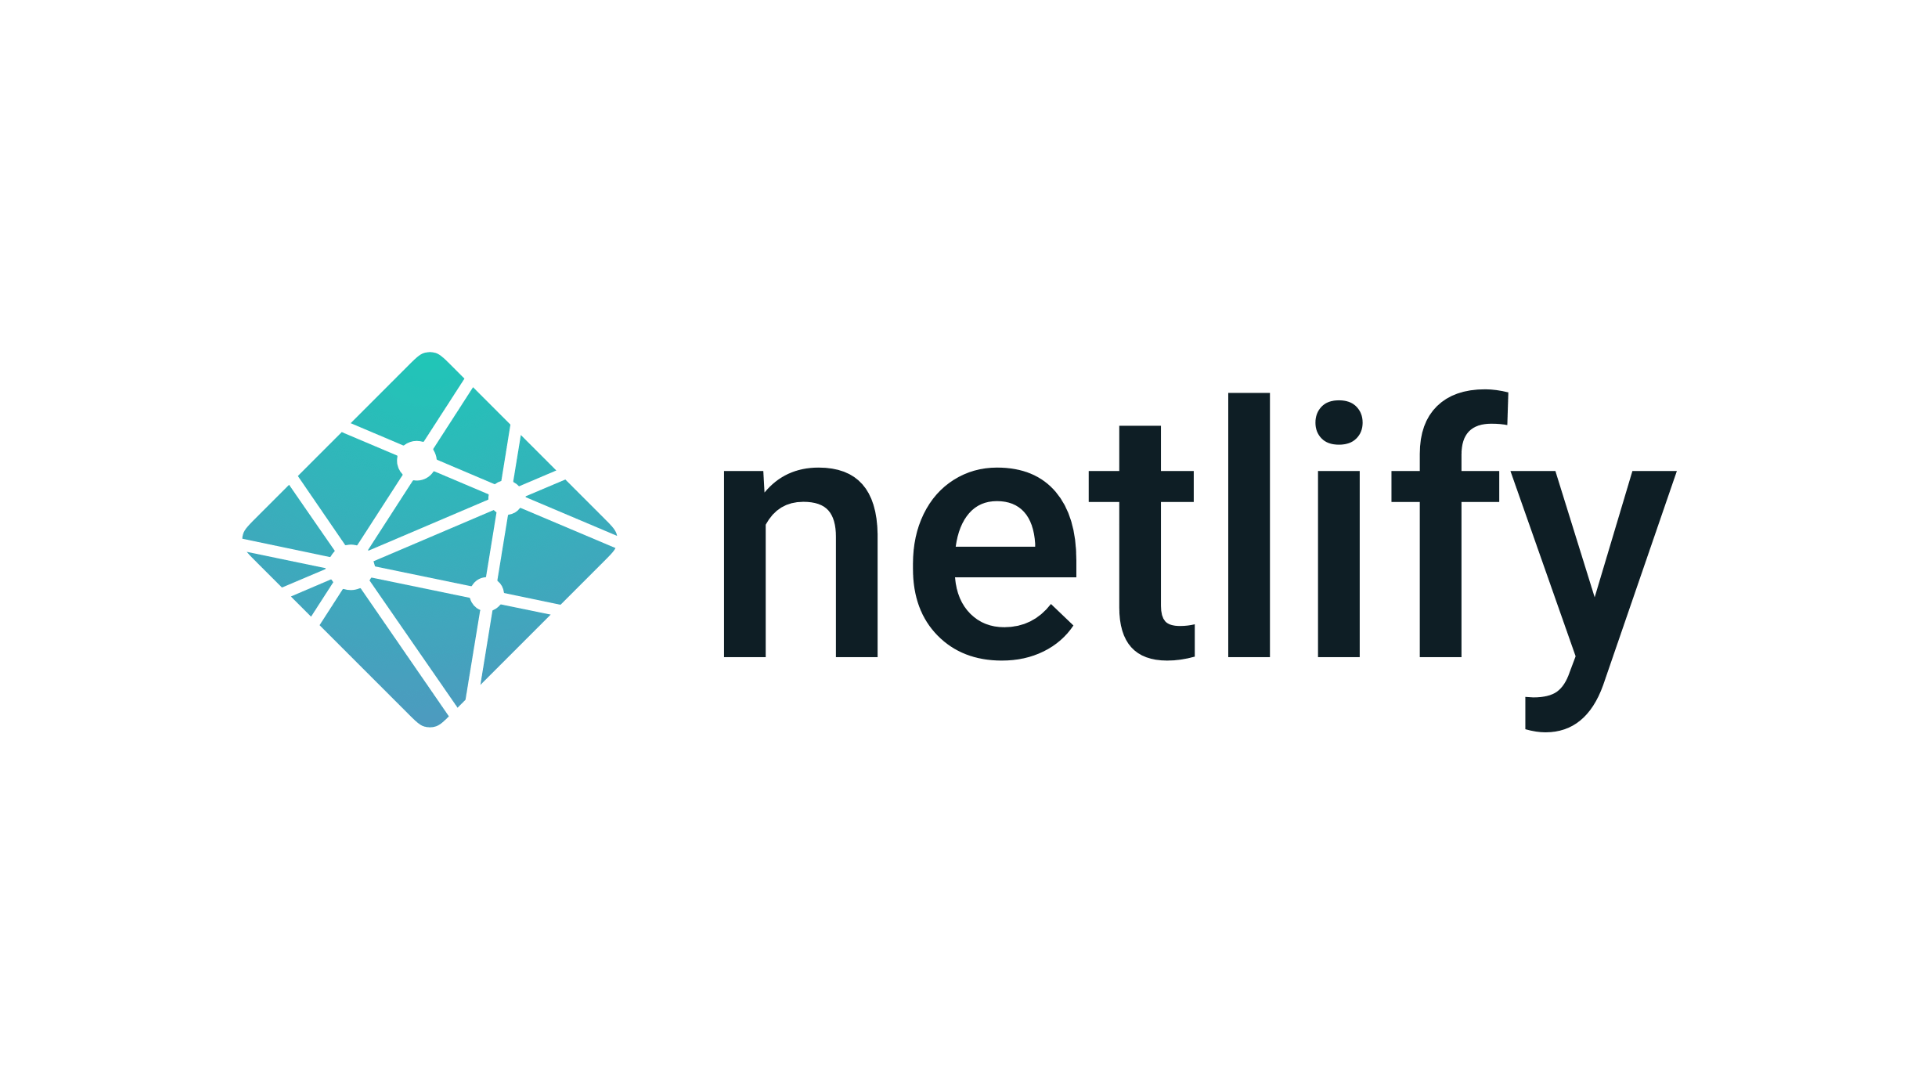 Netlify logo.